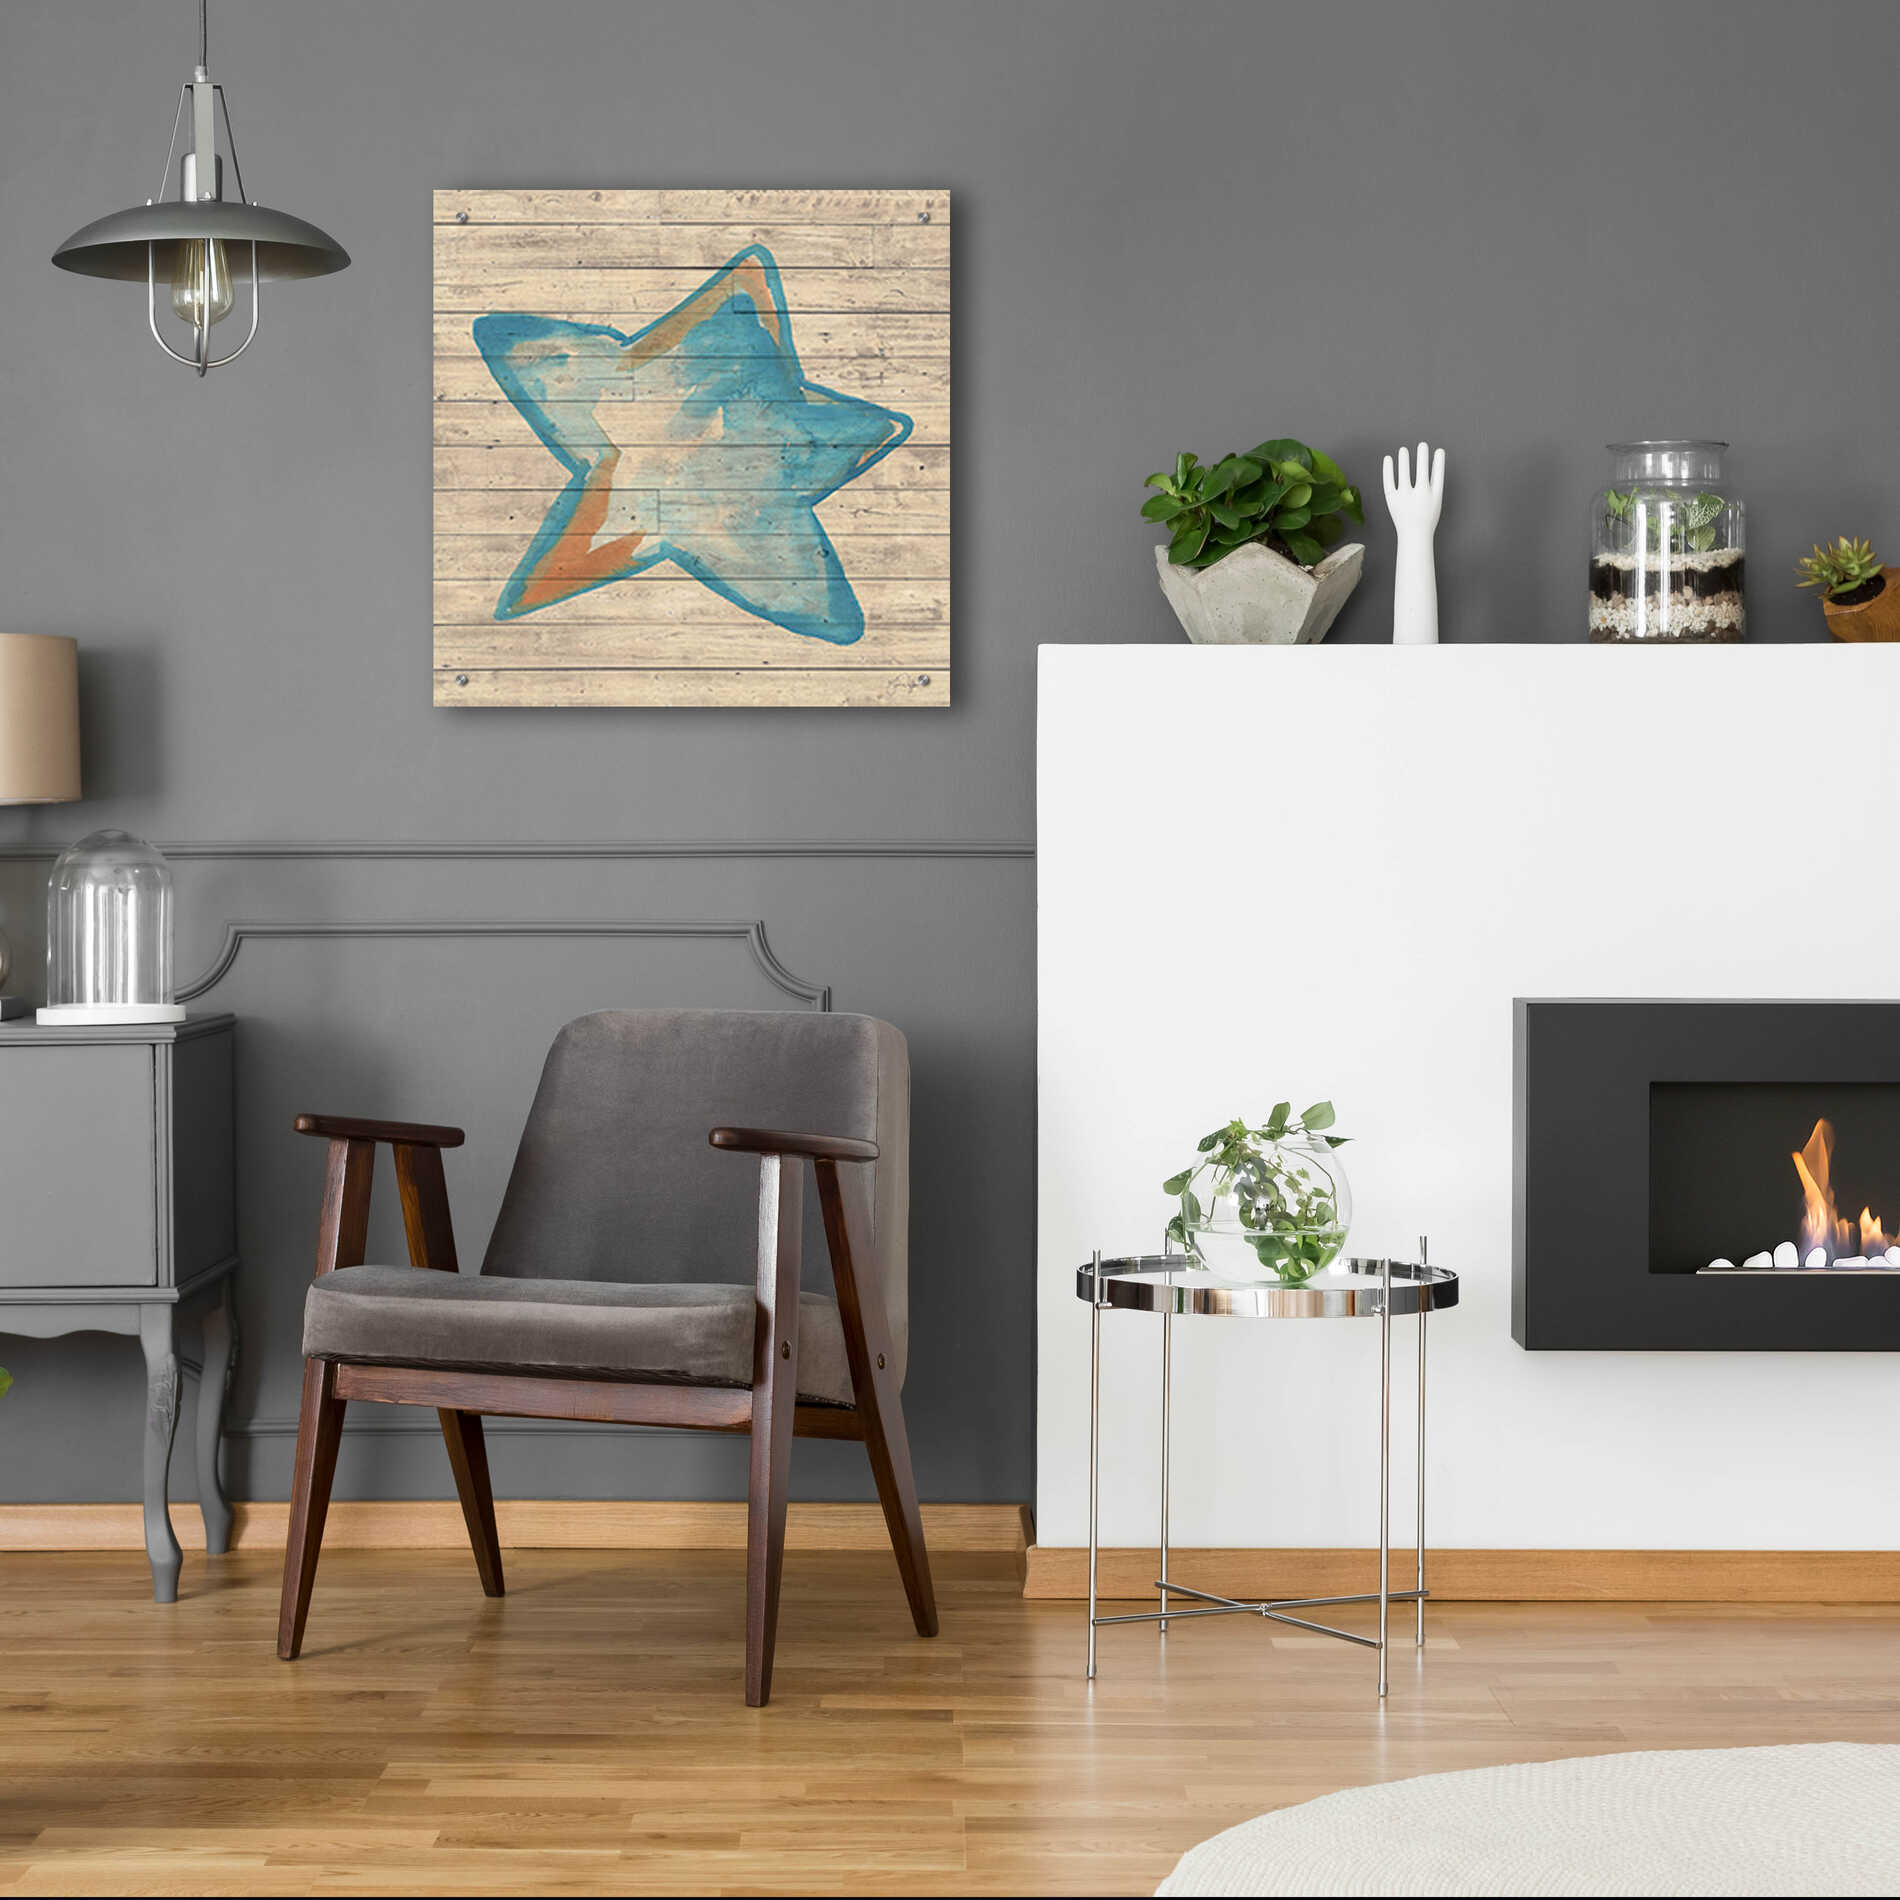 Epic Art 'A Starfish Wish' by Yass Naffas Designs, Acrylic Glass Wall Art,24x24